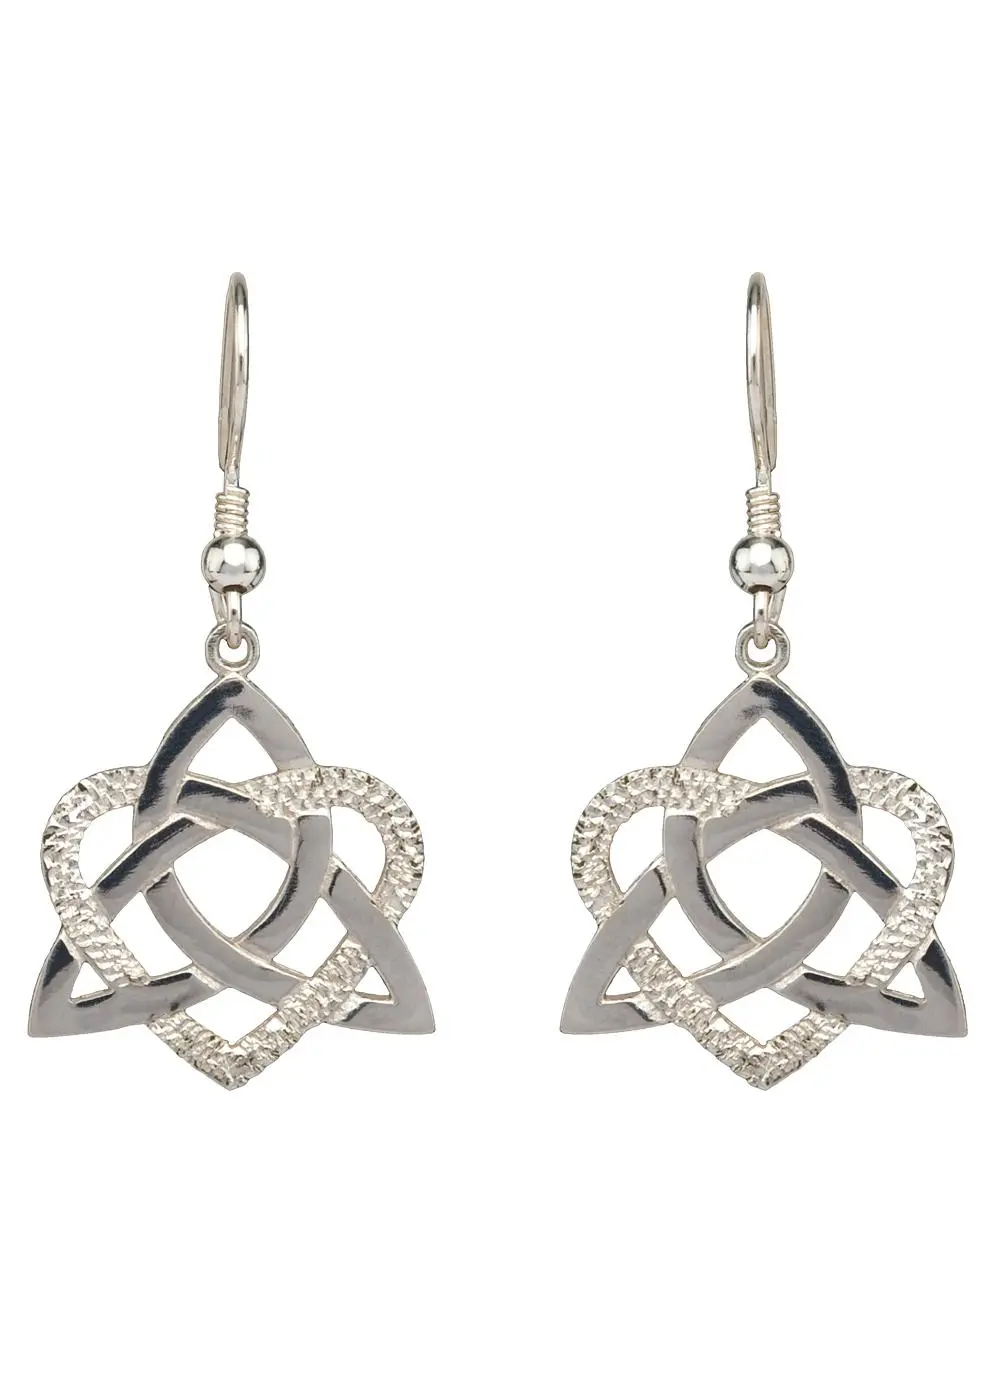 Silver Heart of a Celt Earrings | Blarney